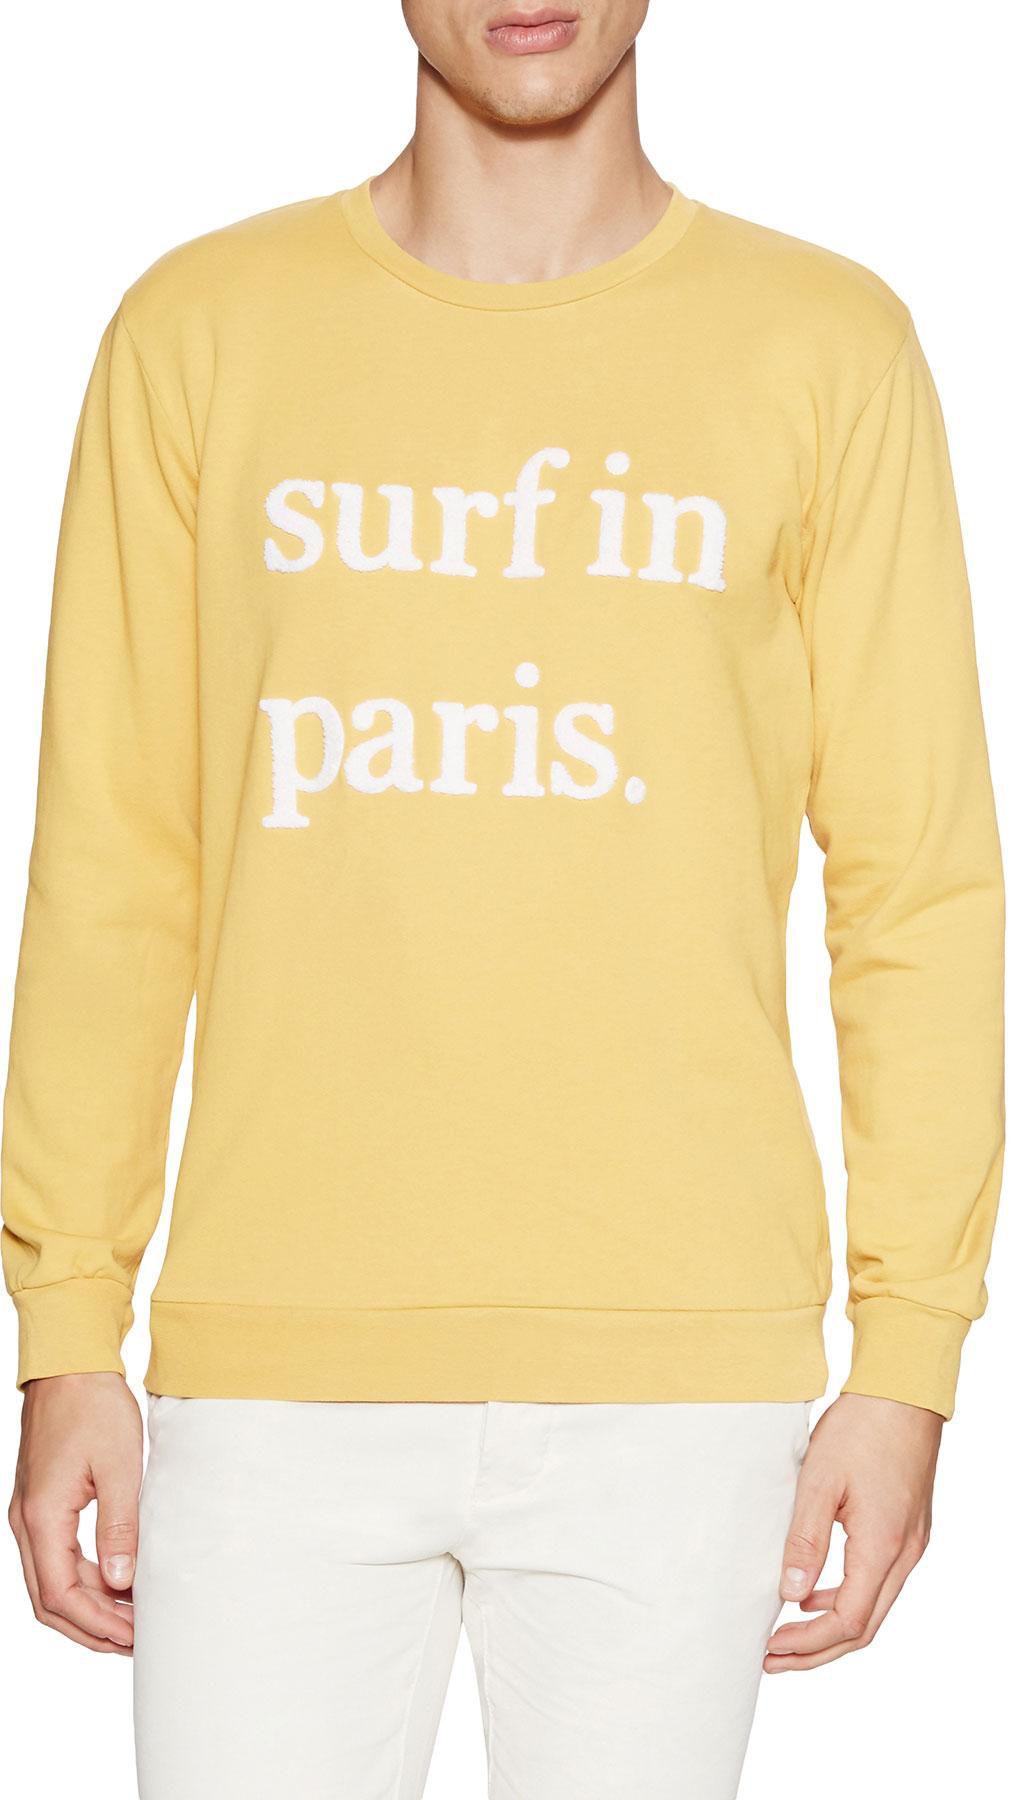 Cuisse de Grenouille - Surf in Paris Sweatshirt